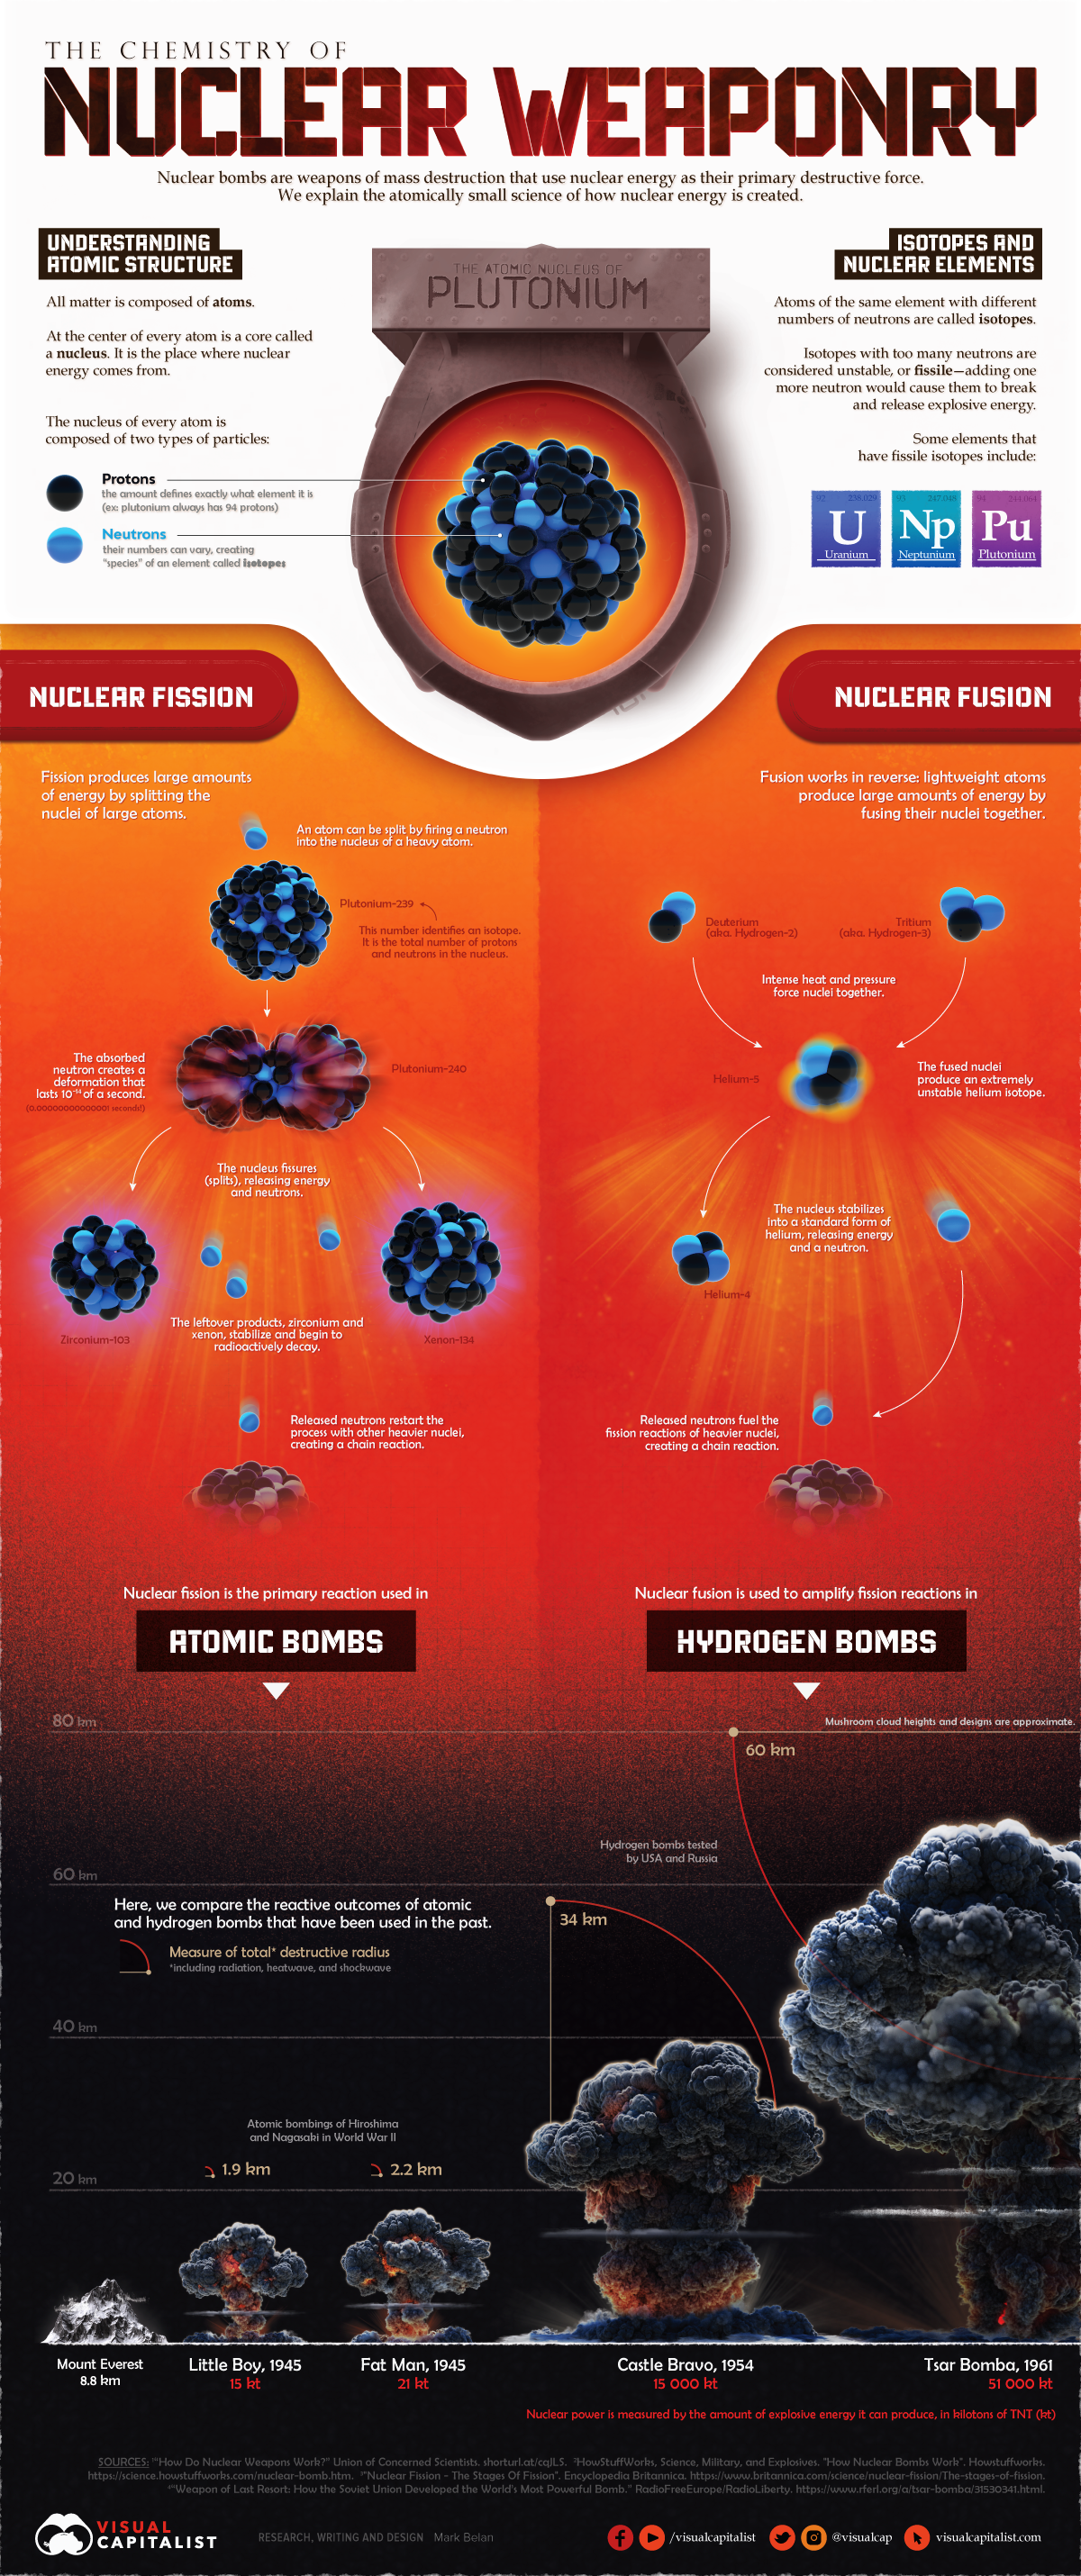 эта инфографика визуализирует науку о том, как работает ядерное оружие, включая процессы деления и синтеза